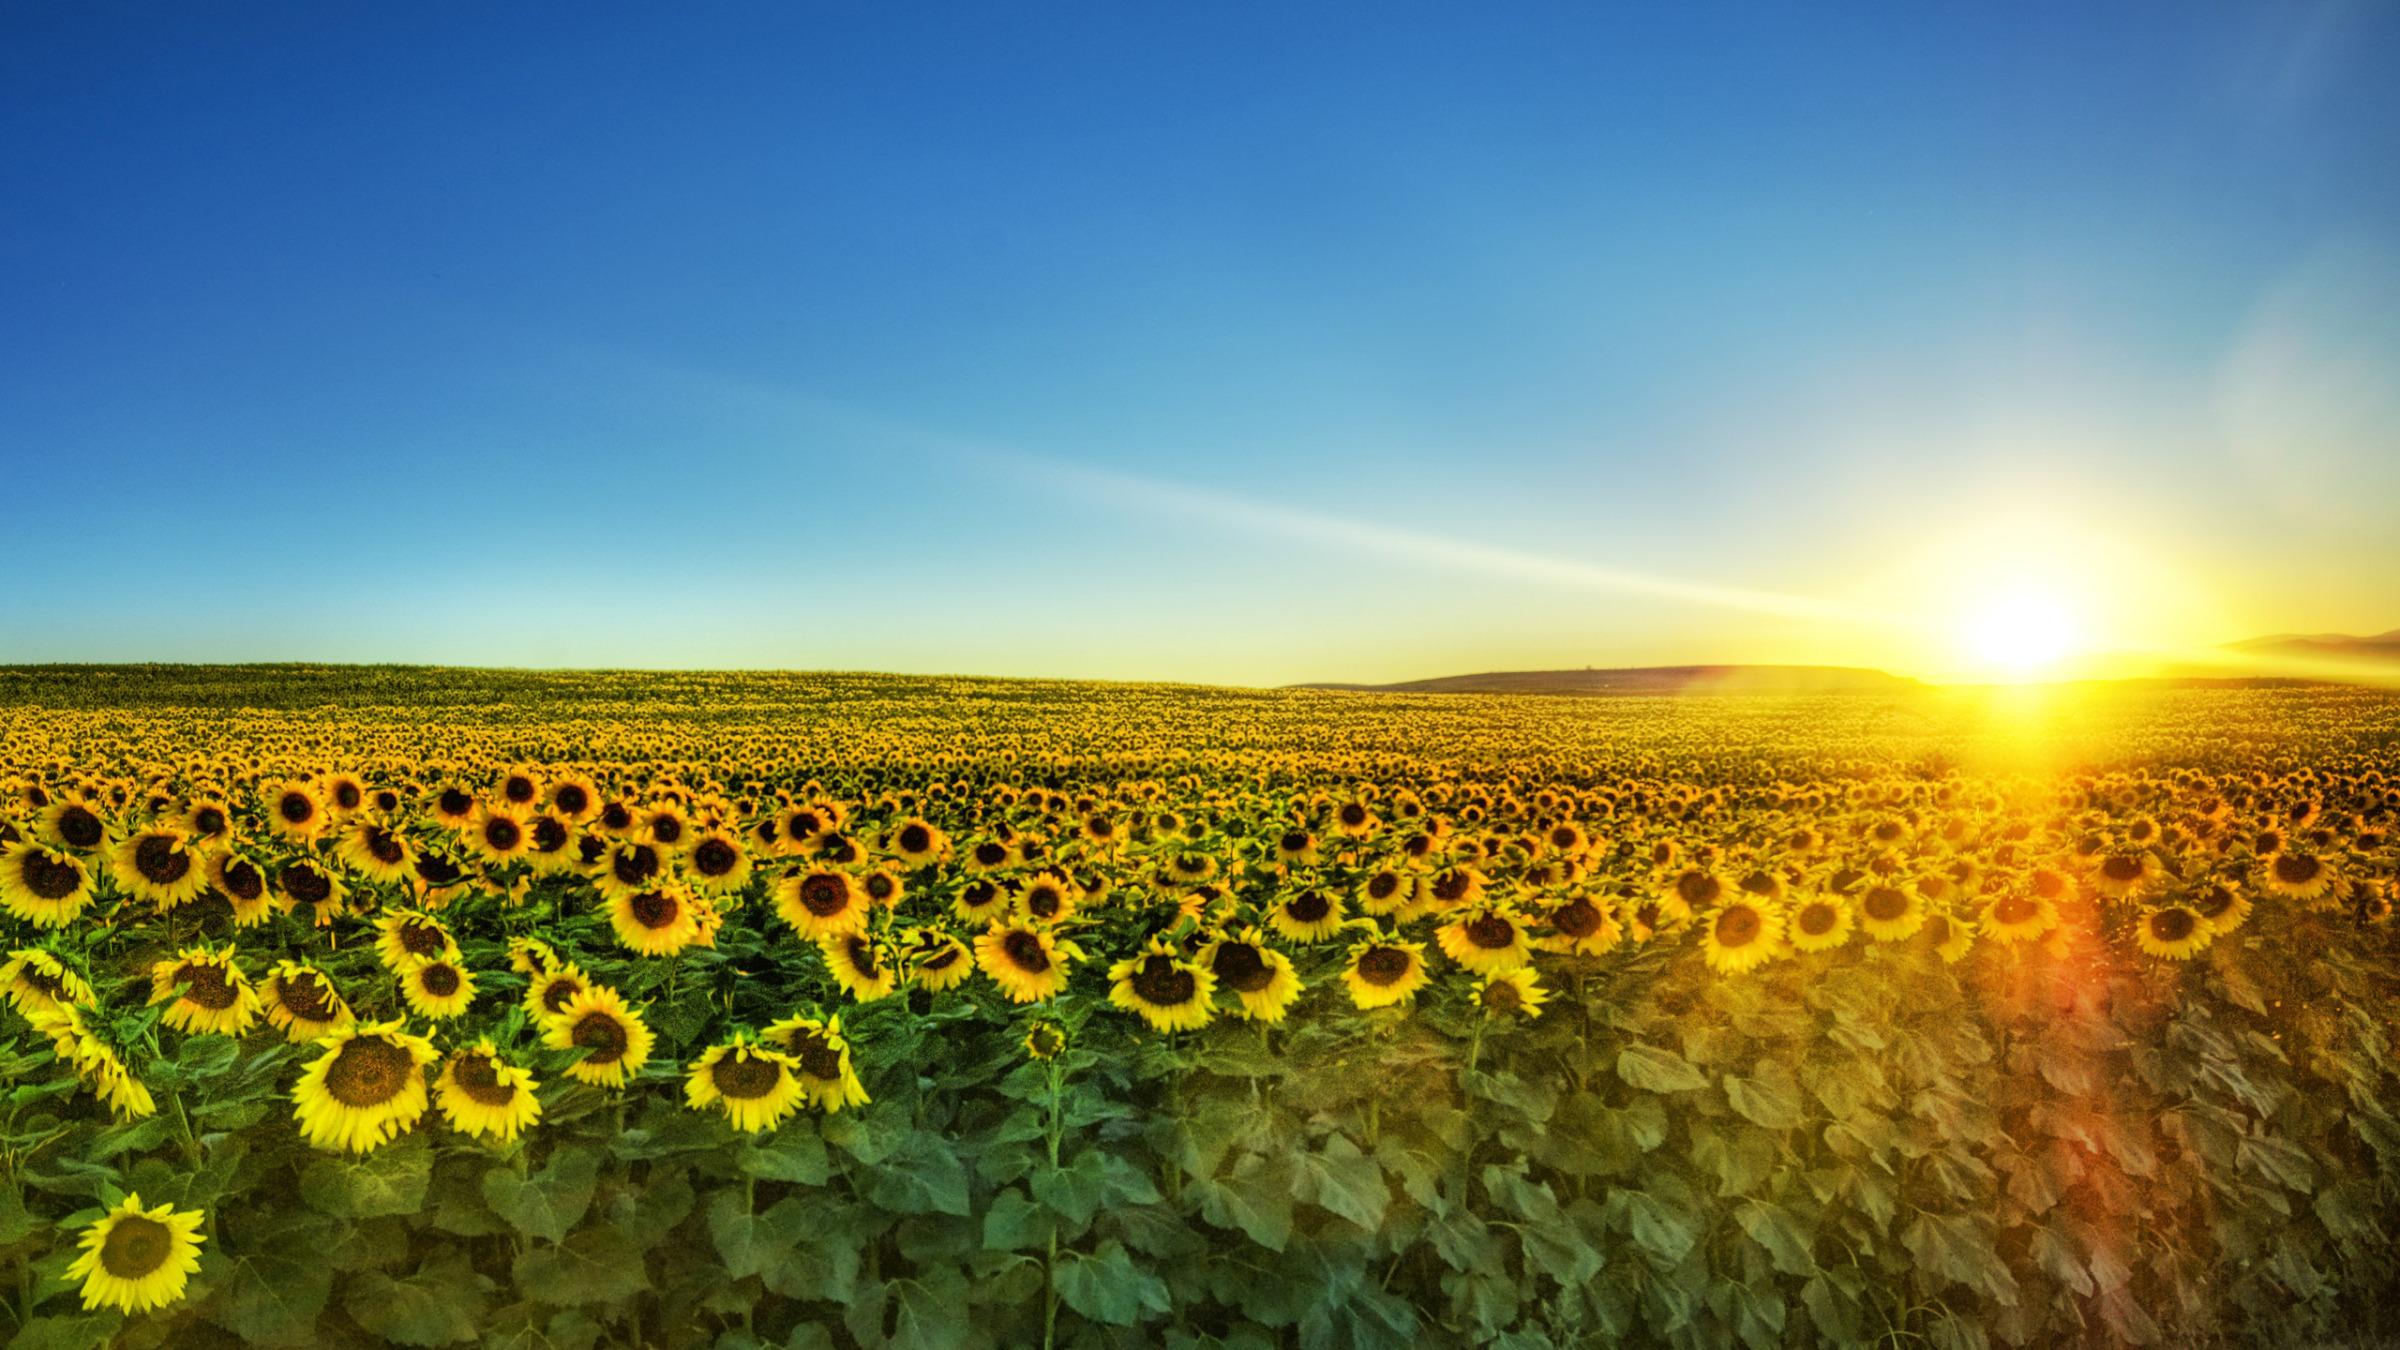 Sunflowers In The Sunset Widescreen Wallpaper. Wide Wallpaper.NET